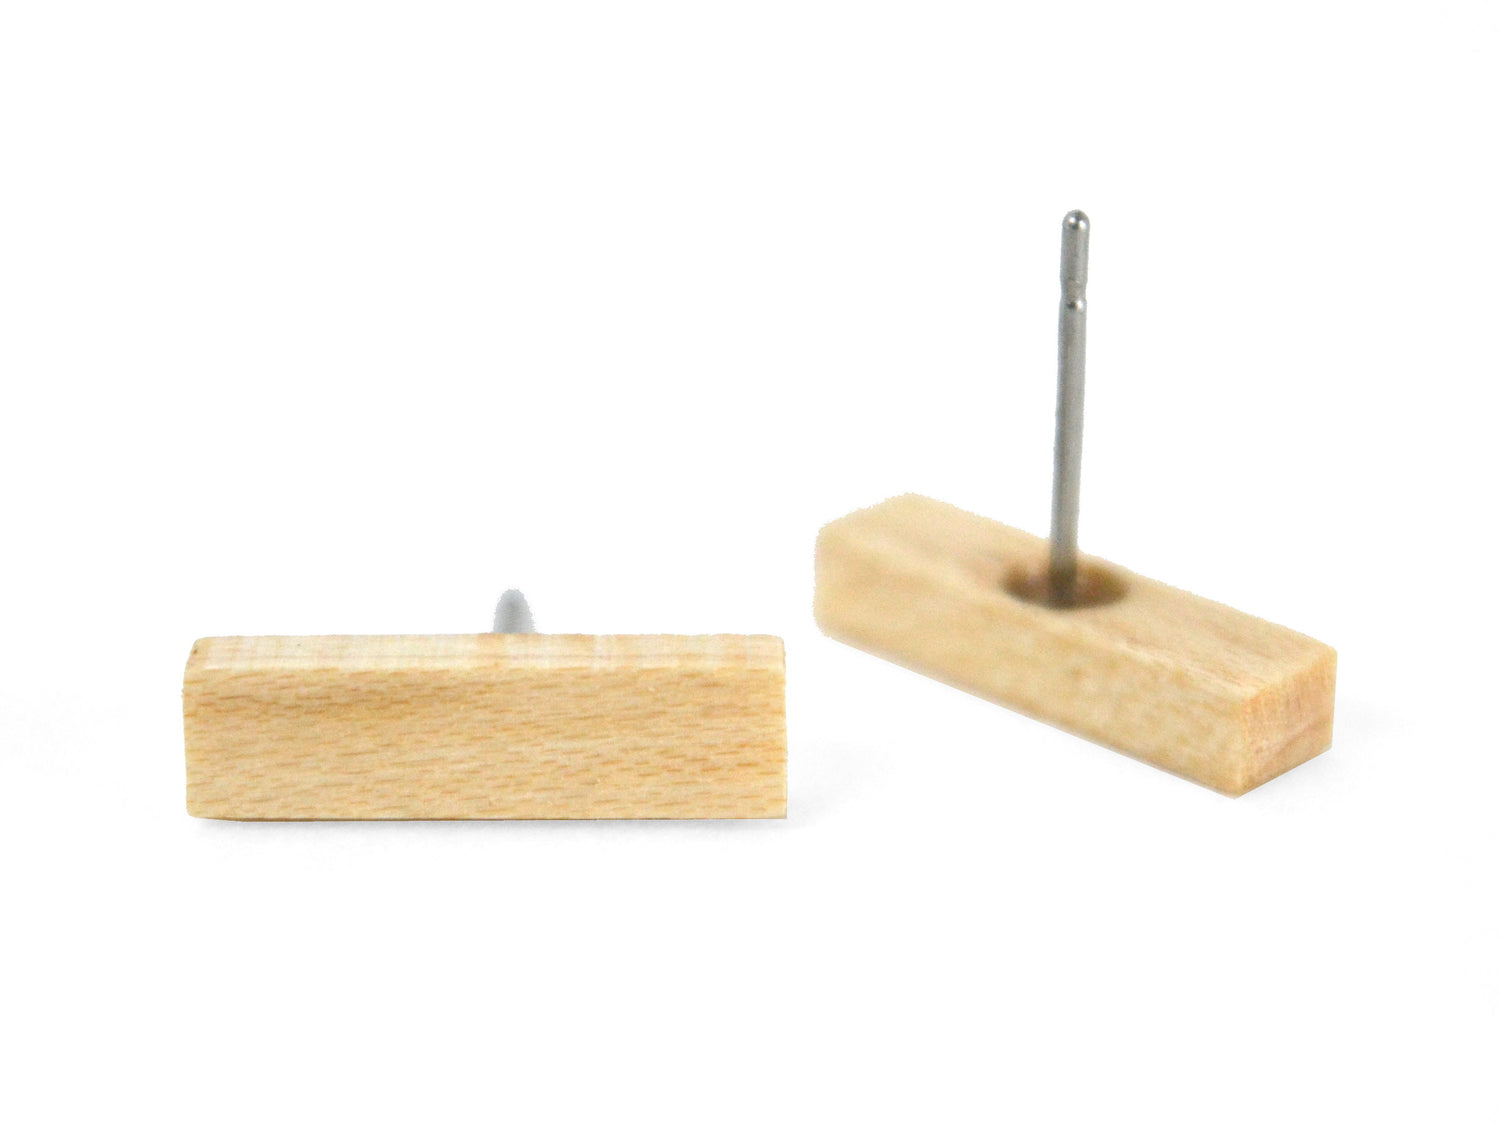 white maple stud earrings, rectangular bar wood earring studs